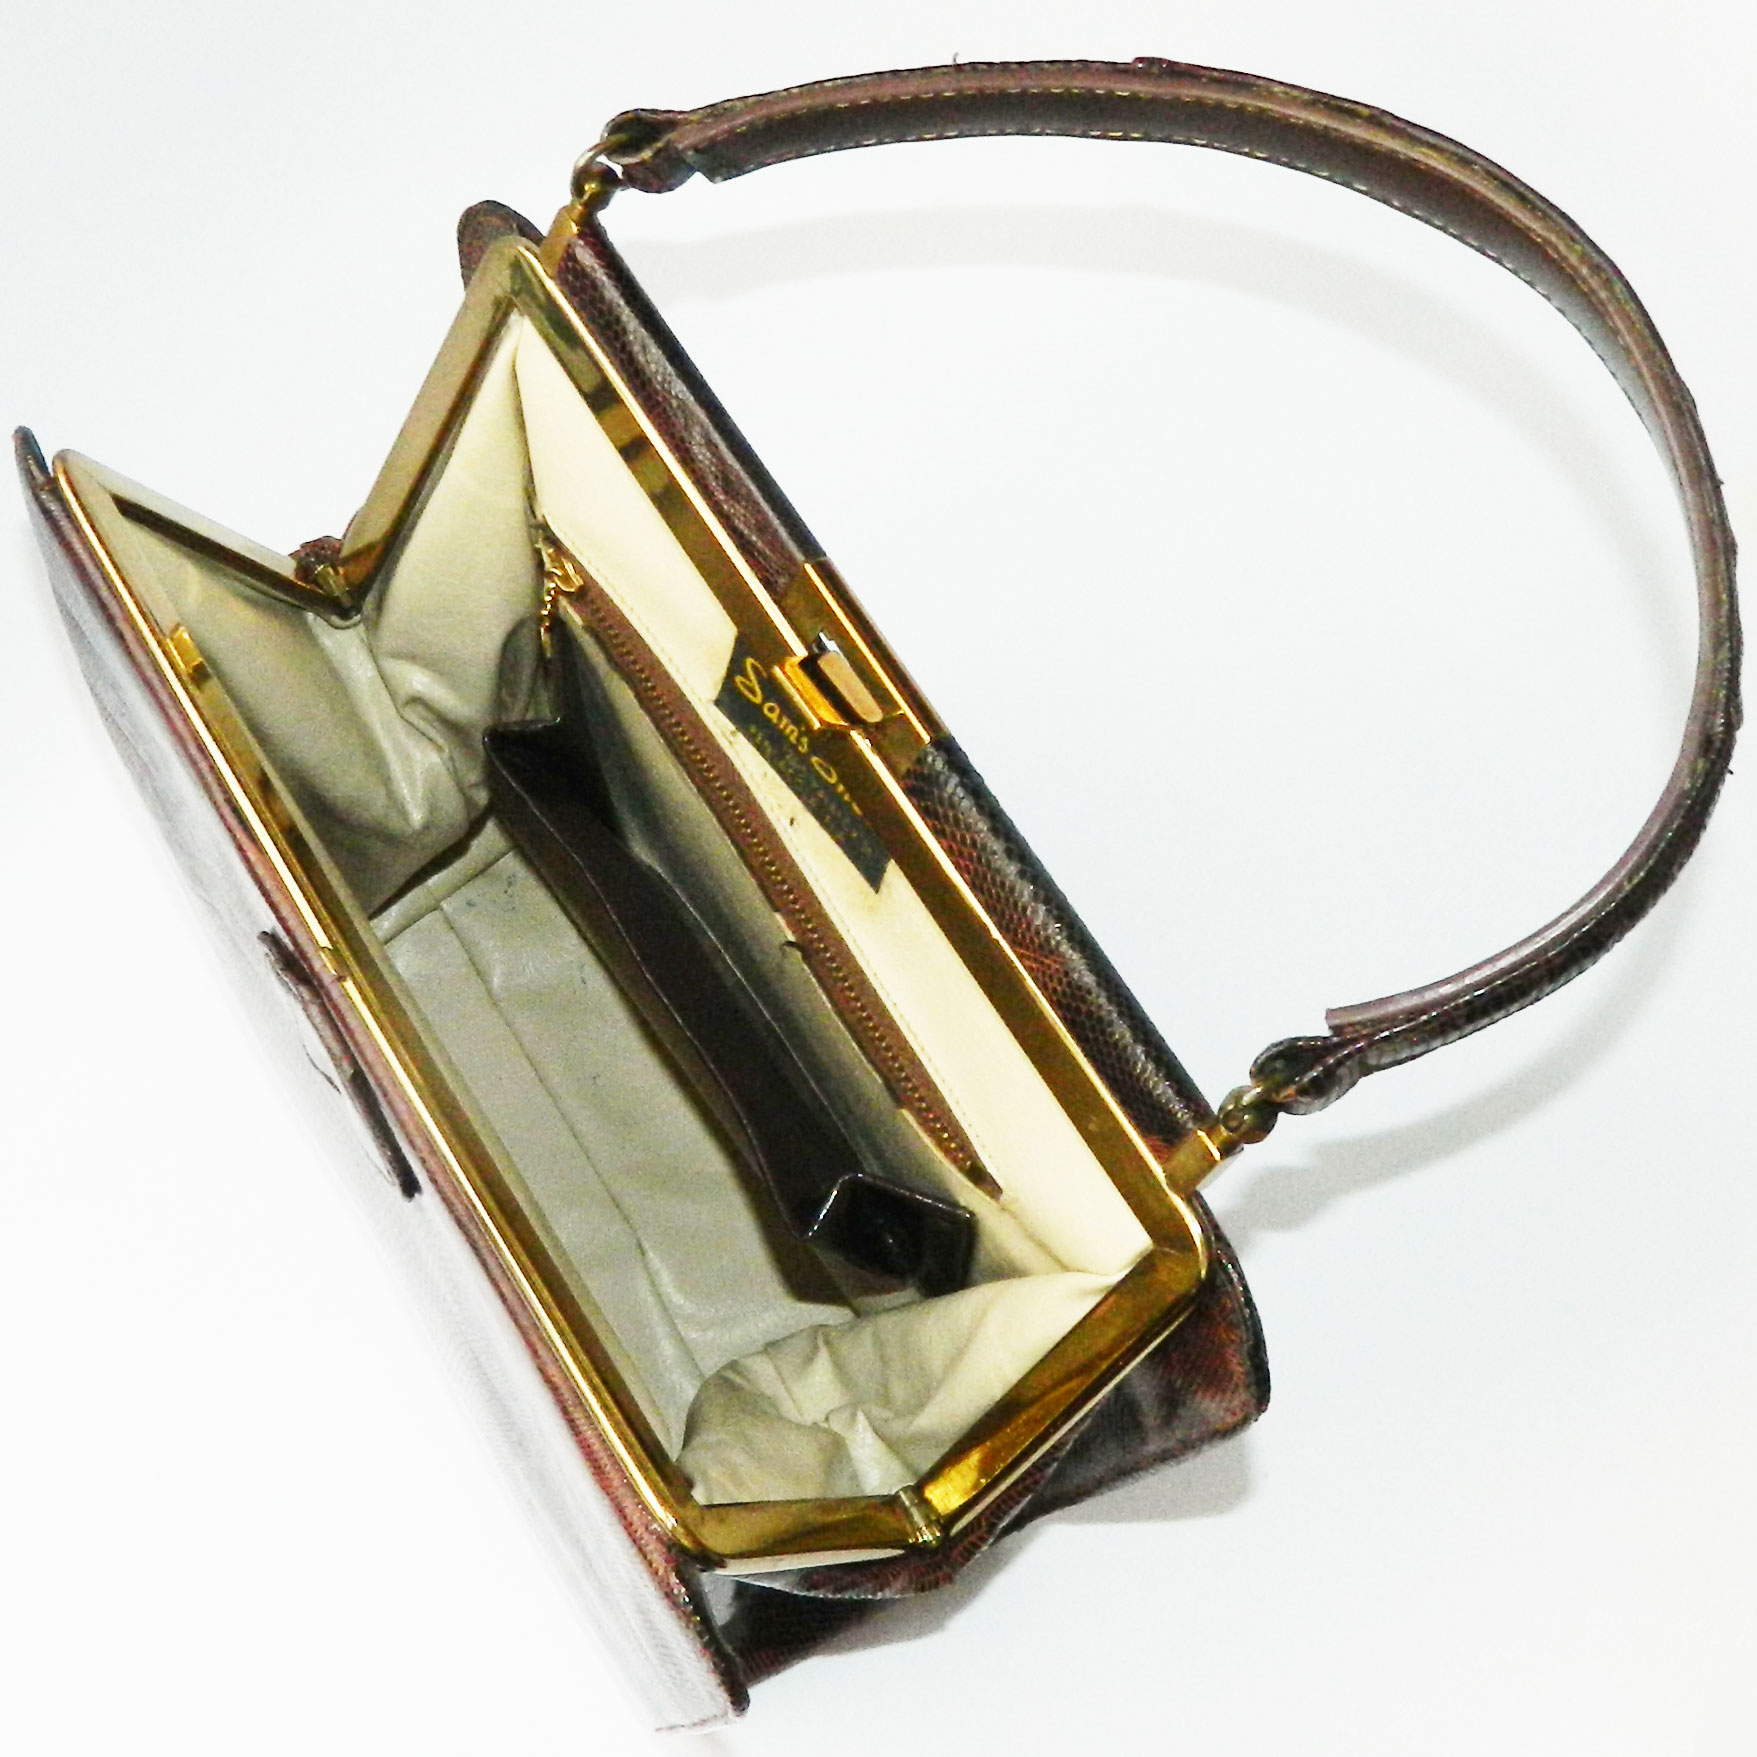 1950s lizard leather purse